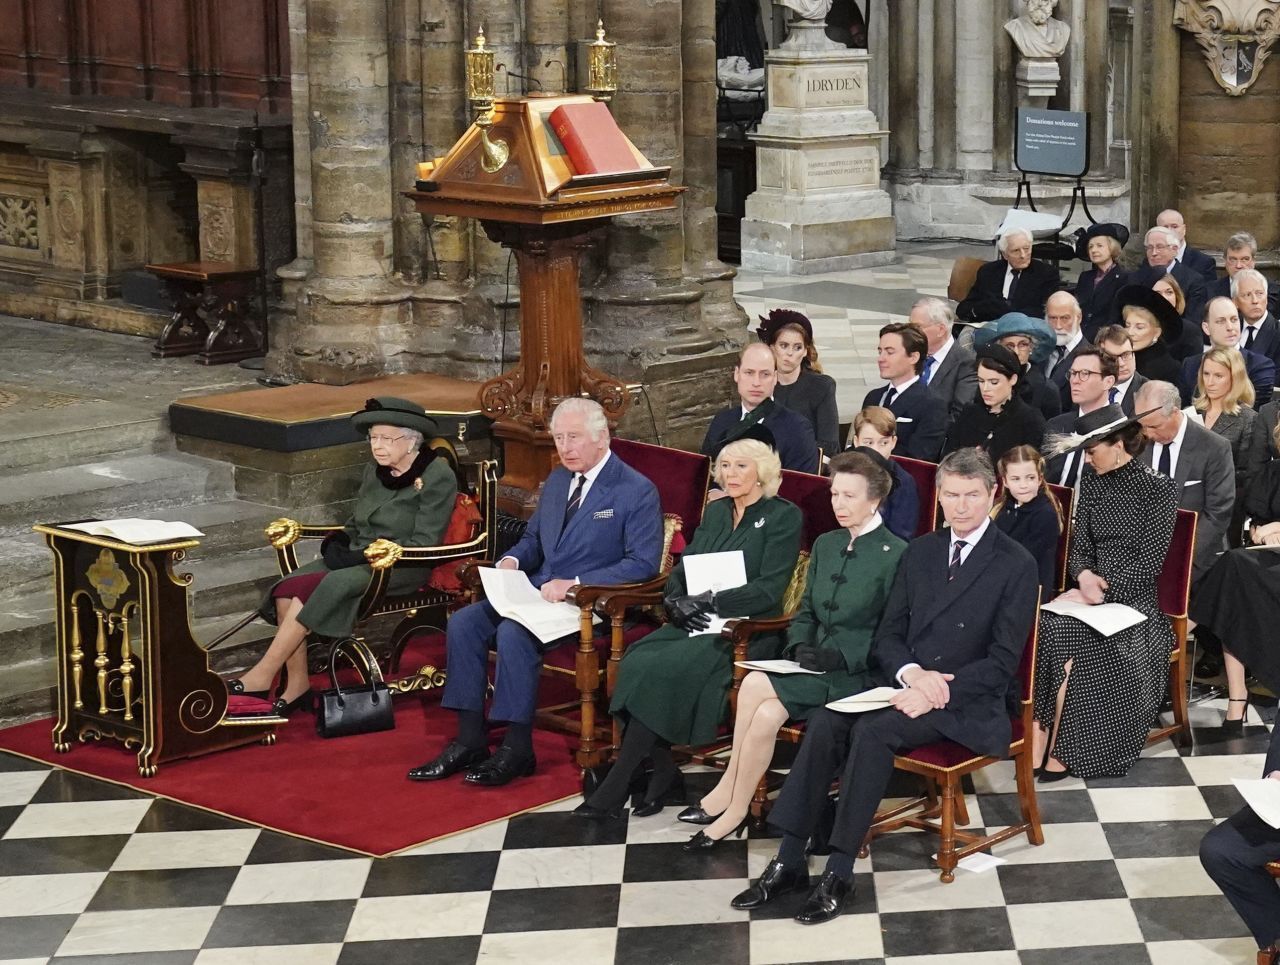 Am 9. April 2021 verstab Prinz Philip im stattlichen Alter von 99. Jahren. Am 10. Juni 2021 hätte er seinen 100. Geburtstag gefeiert. Der Trauergottesdienst fand in Westminster Abbey statt.